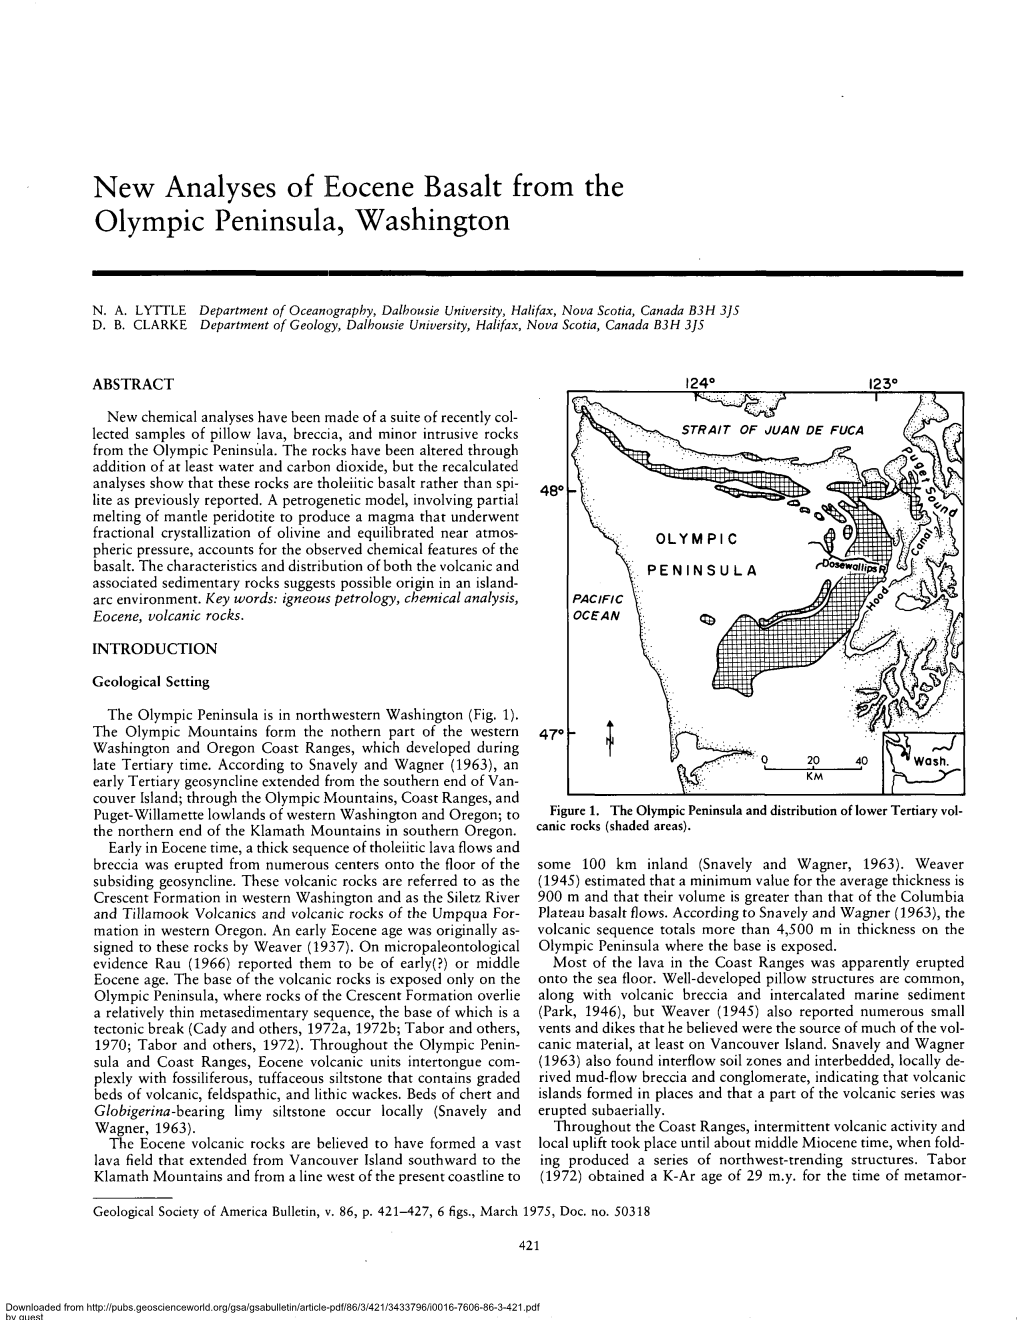 New Analyses of Eocene Basalt from the Olympic Peninsula, Washington